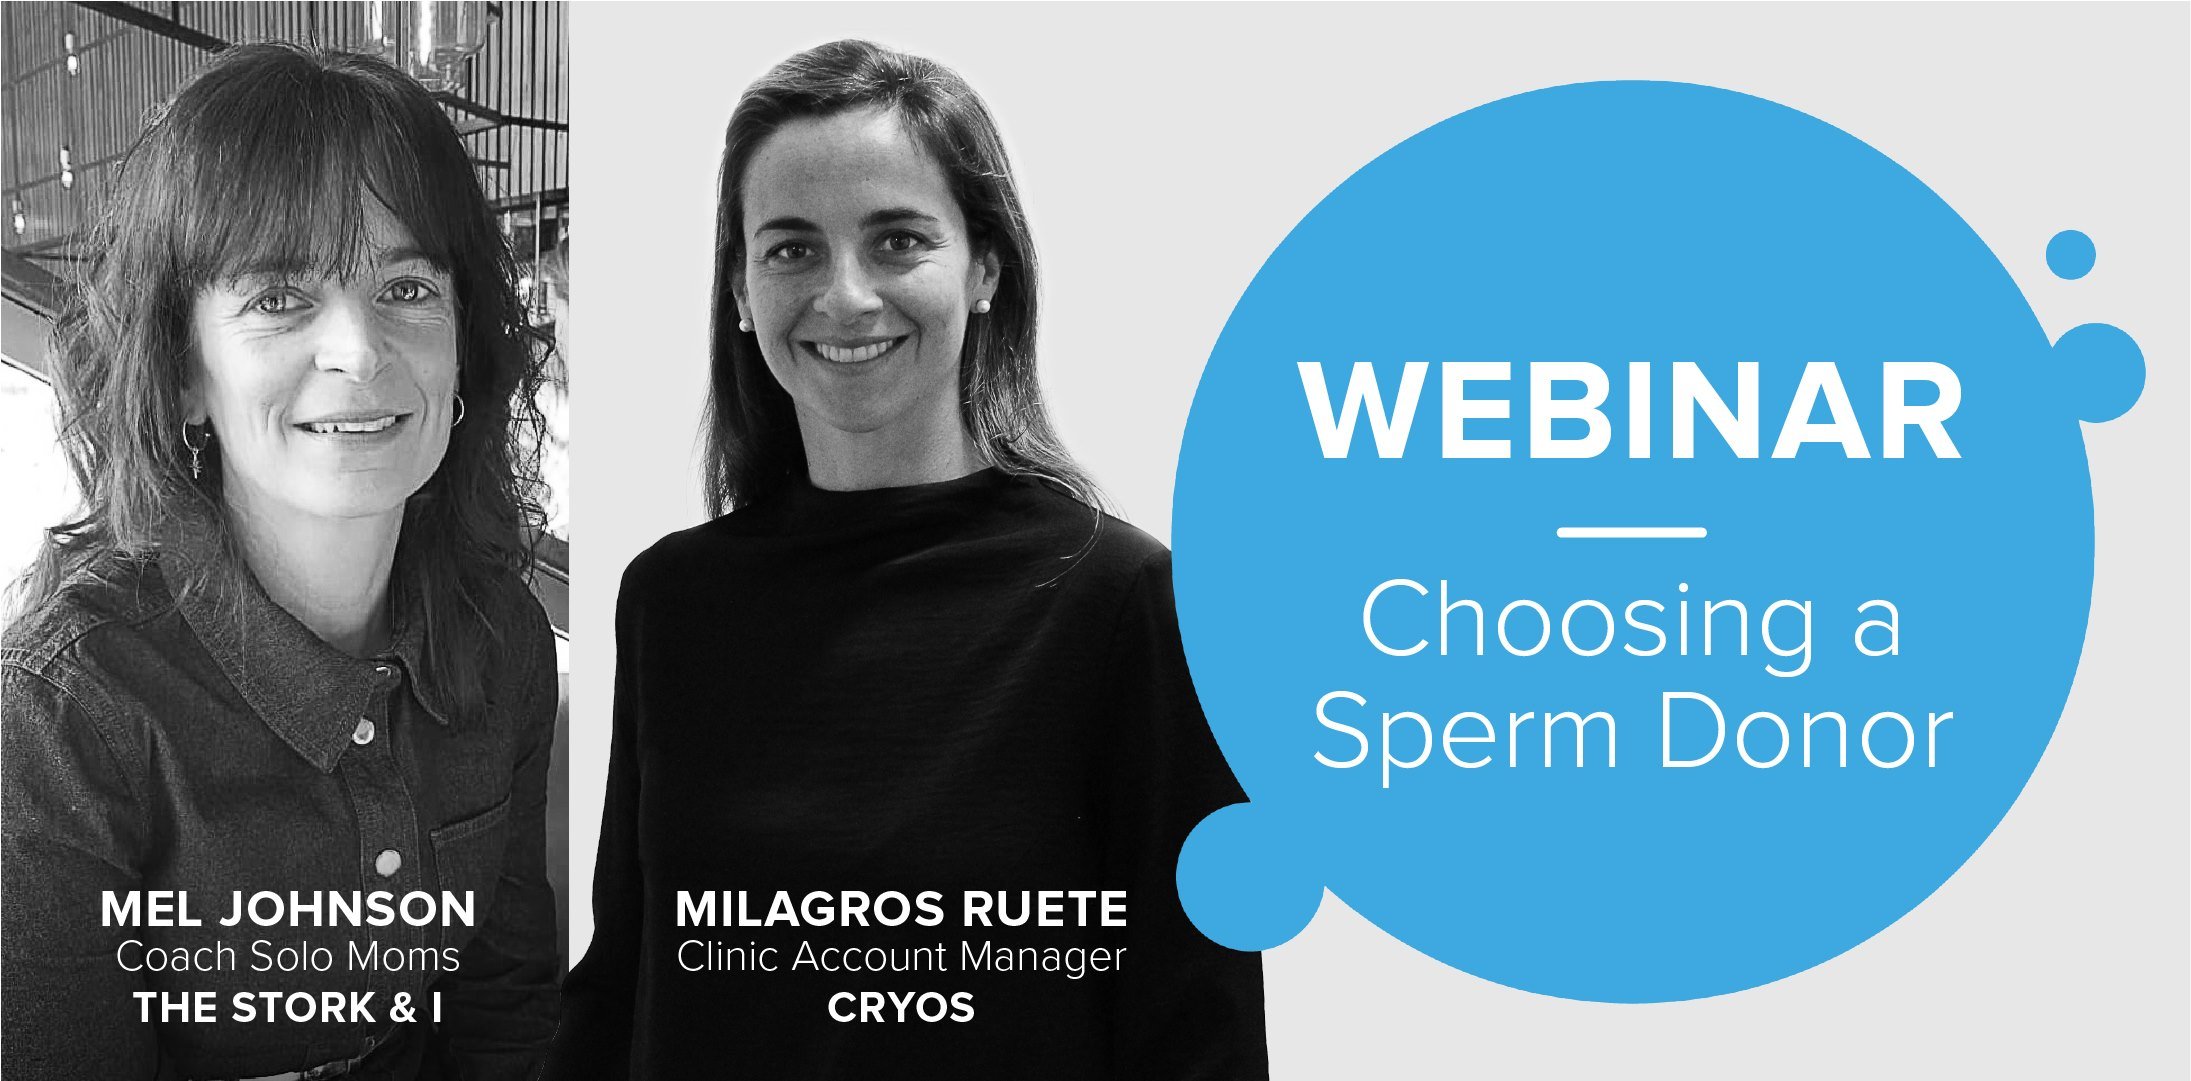 Cryos International Choosing Sperm Donor Webinar